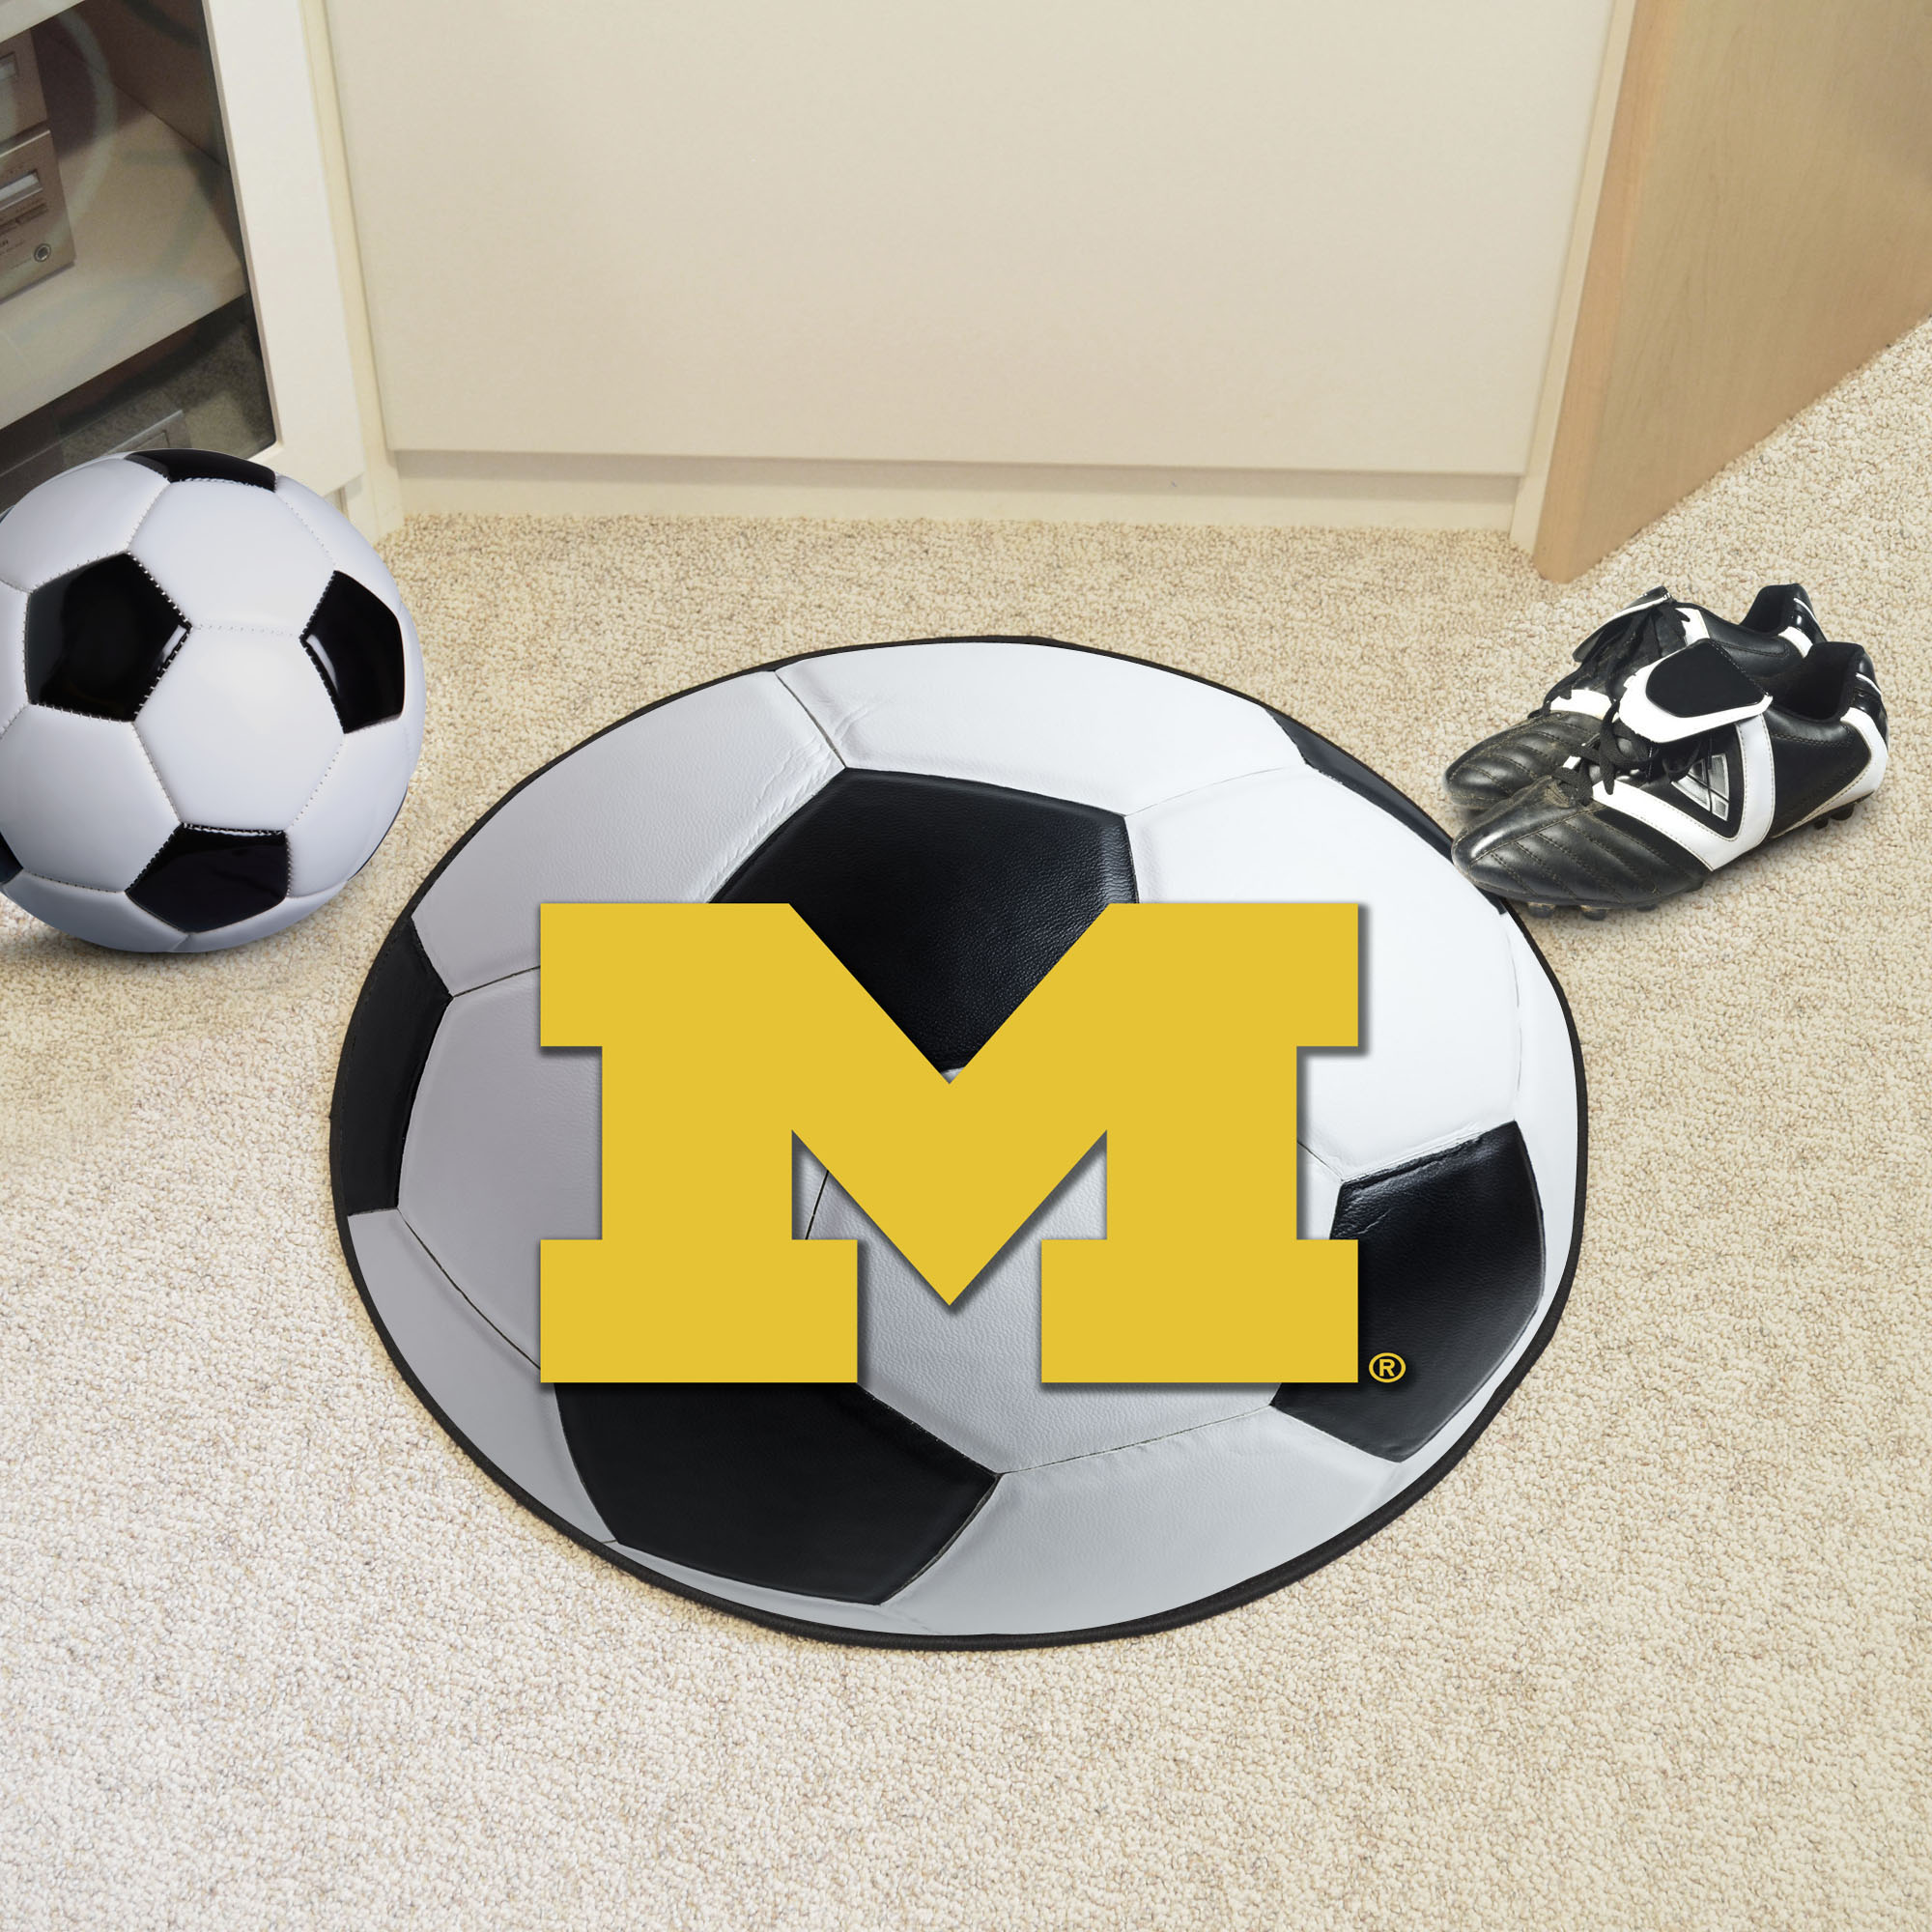 University of Michigan Ball Shaped Area Rugs (Ball Shaped Area Rugs: Soccer Ball)